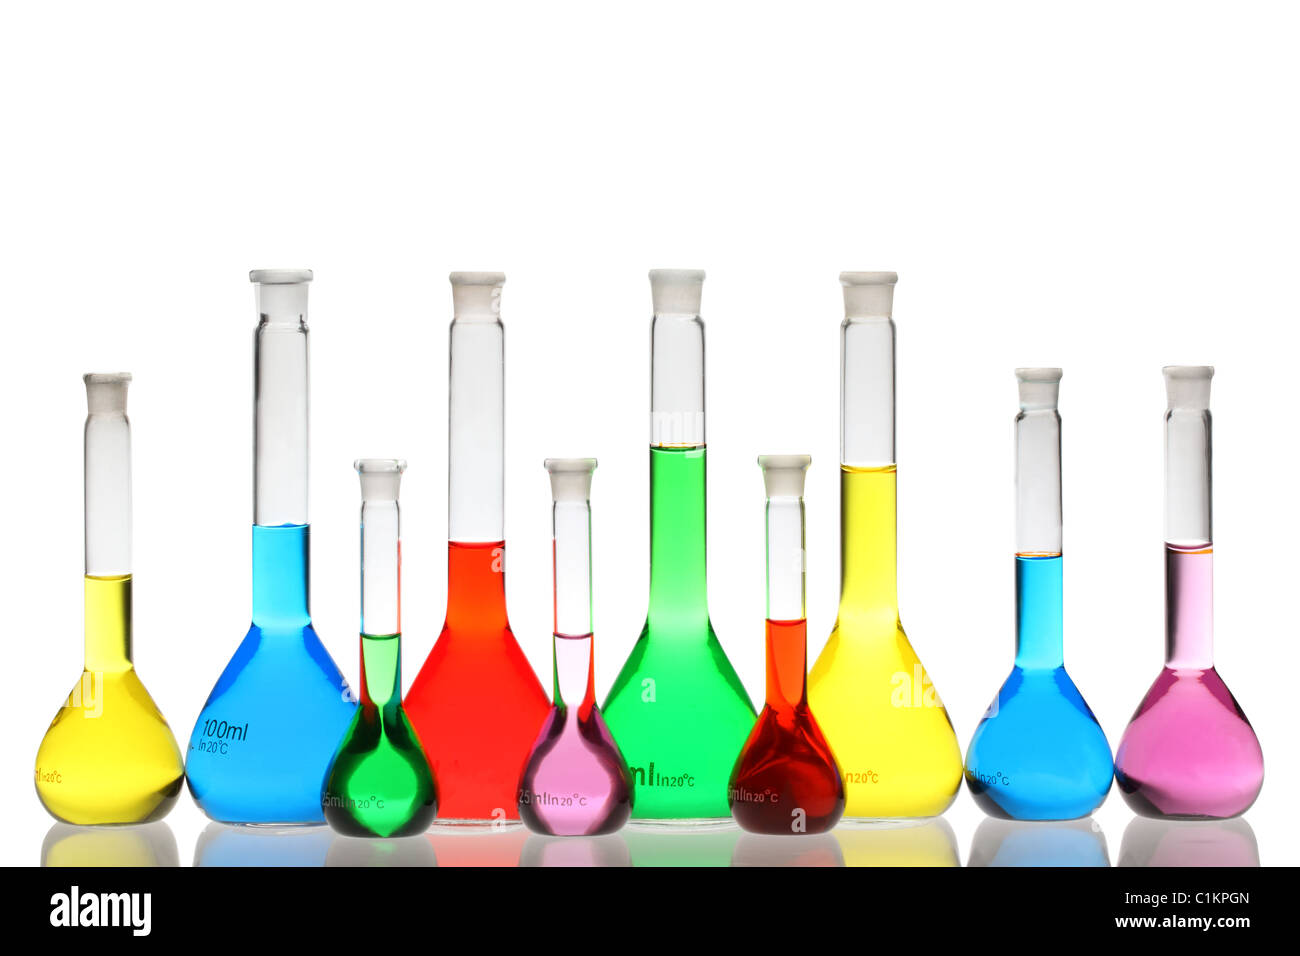 El material de vidrio de laboratorio con líquidos de diferentes colores aislado sobre fondo blanco. Foto de stock